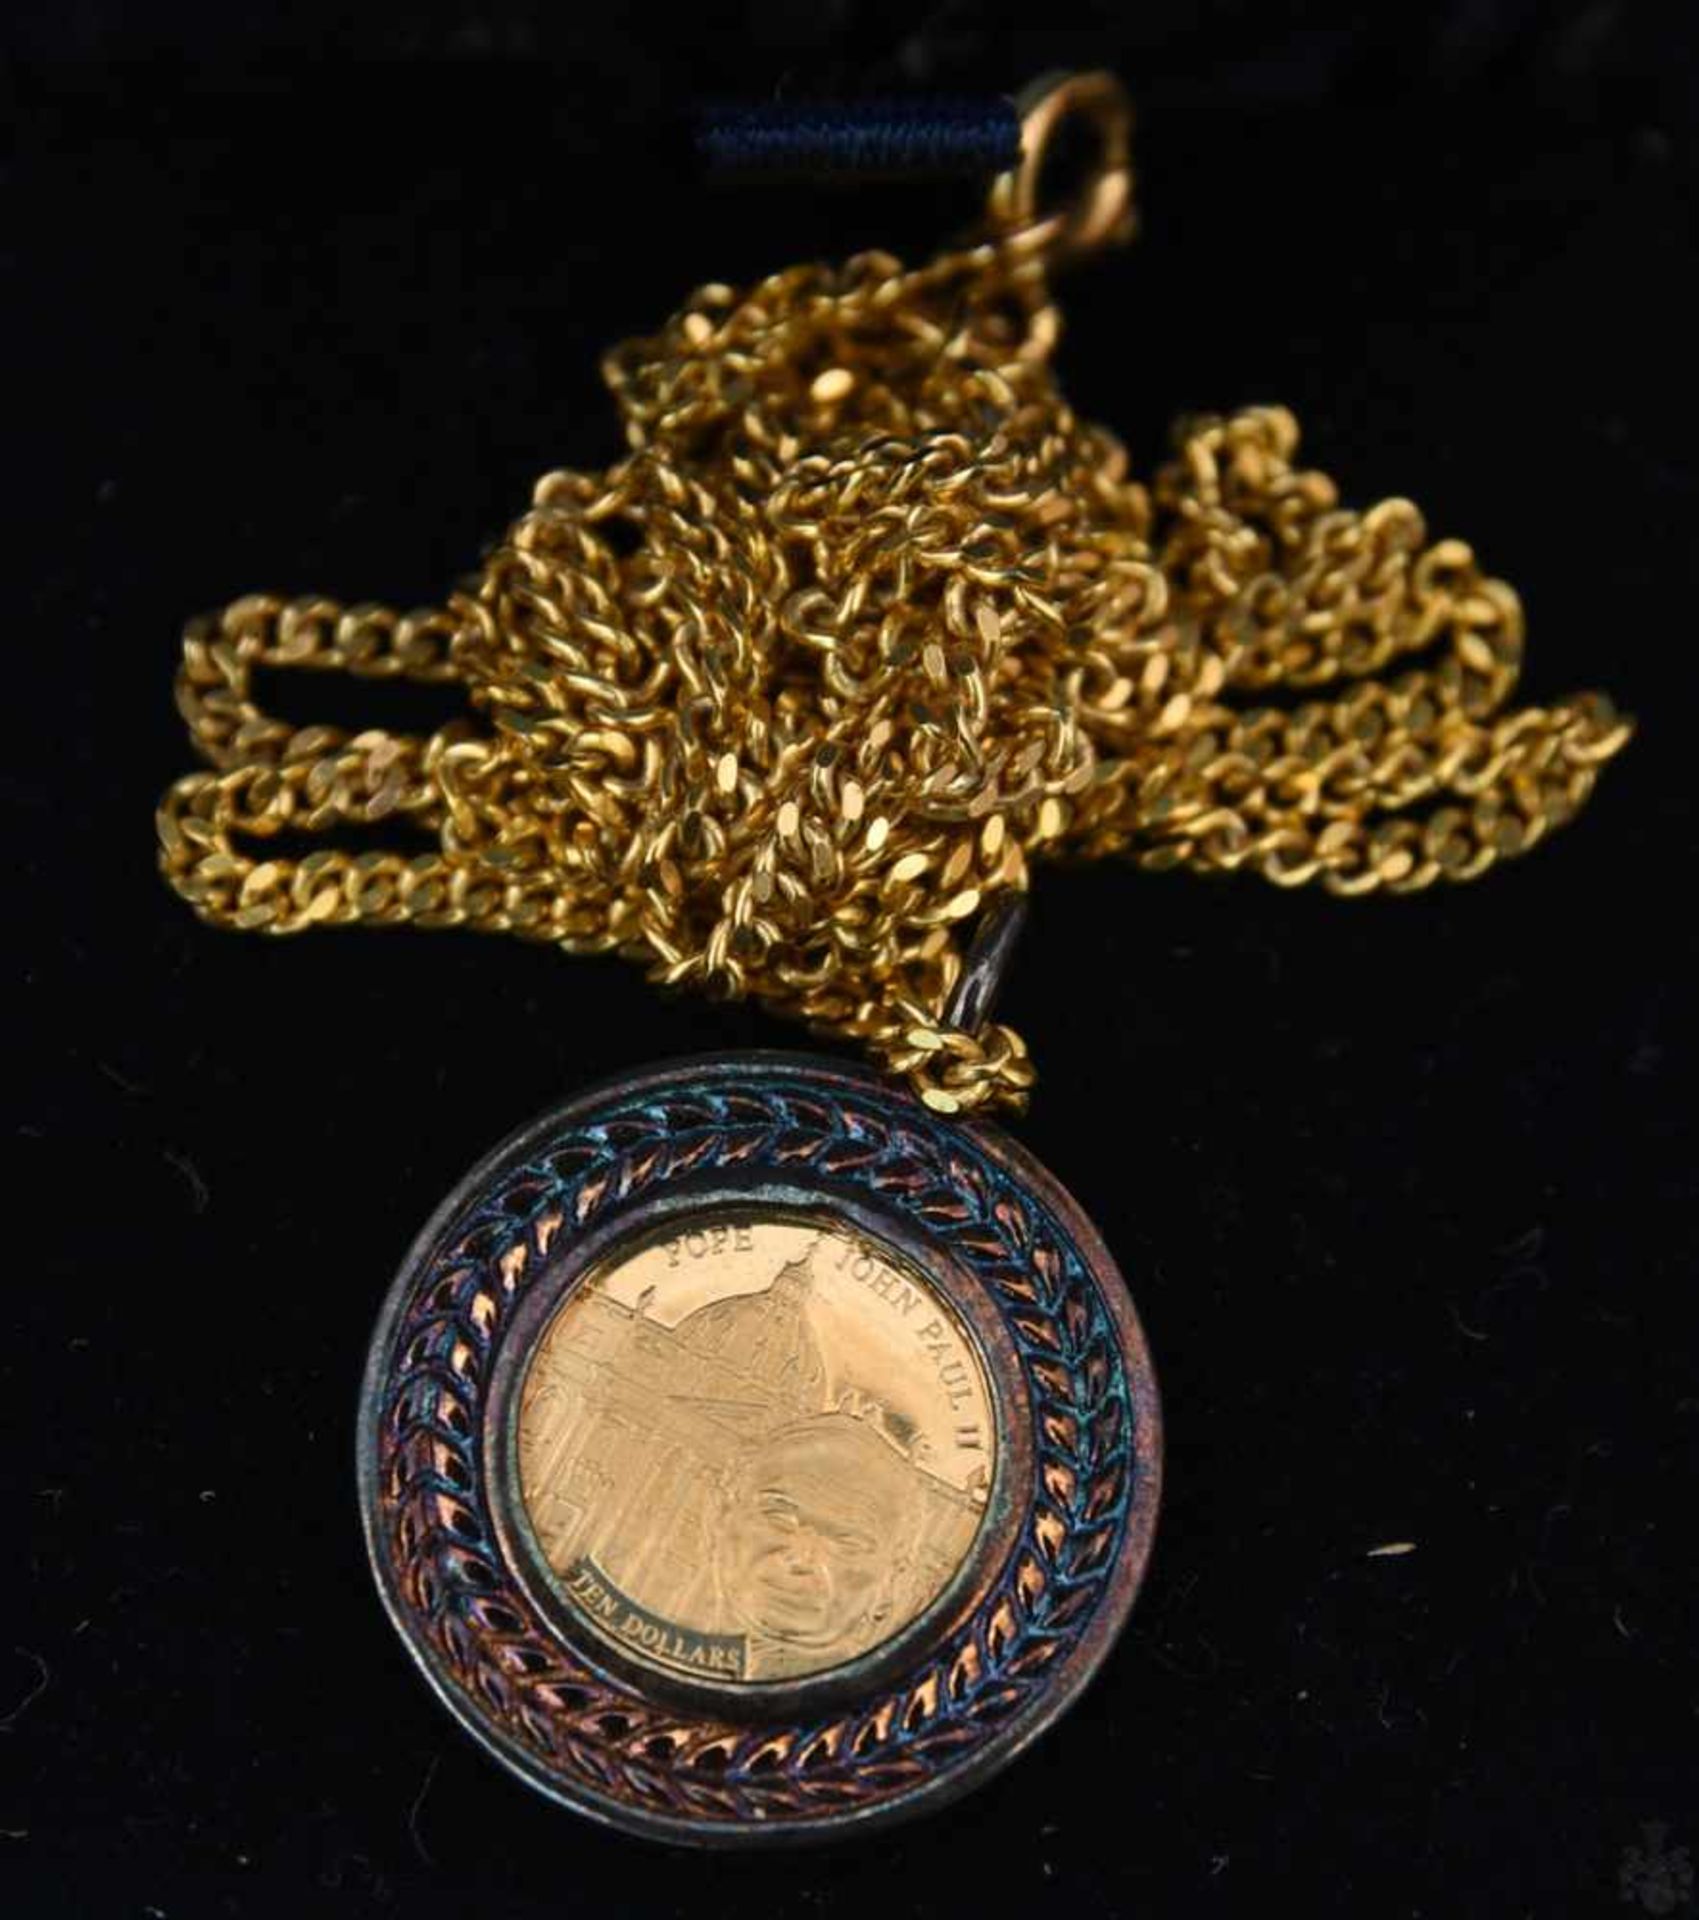 MÜNZANHÄNGER, Die kleinsten Goldmünzen der Welt, mit 14 Karat Kette, 20. Jhd. (13)1x Münzanhänger - Bild 5 aus 6